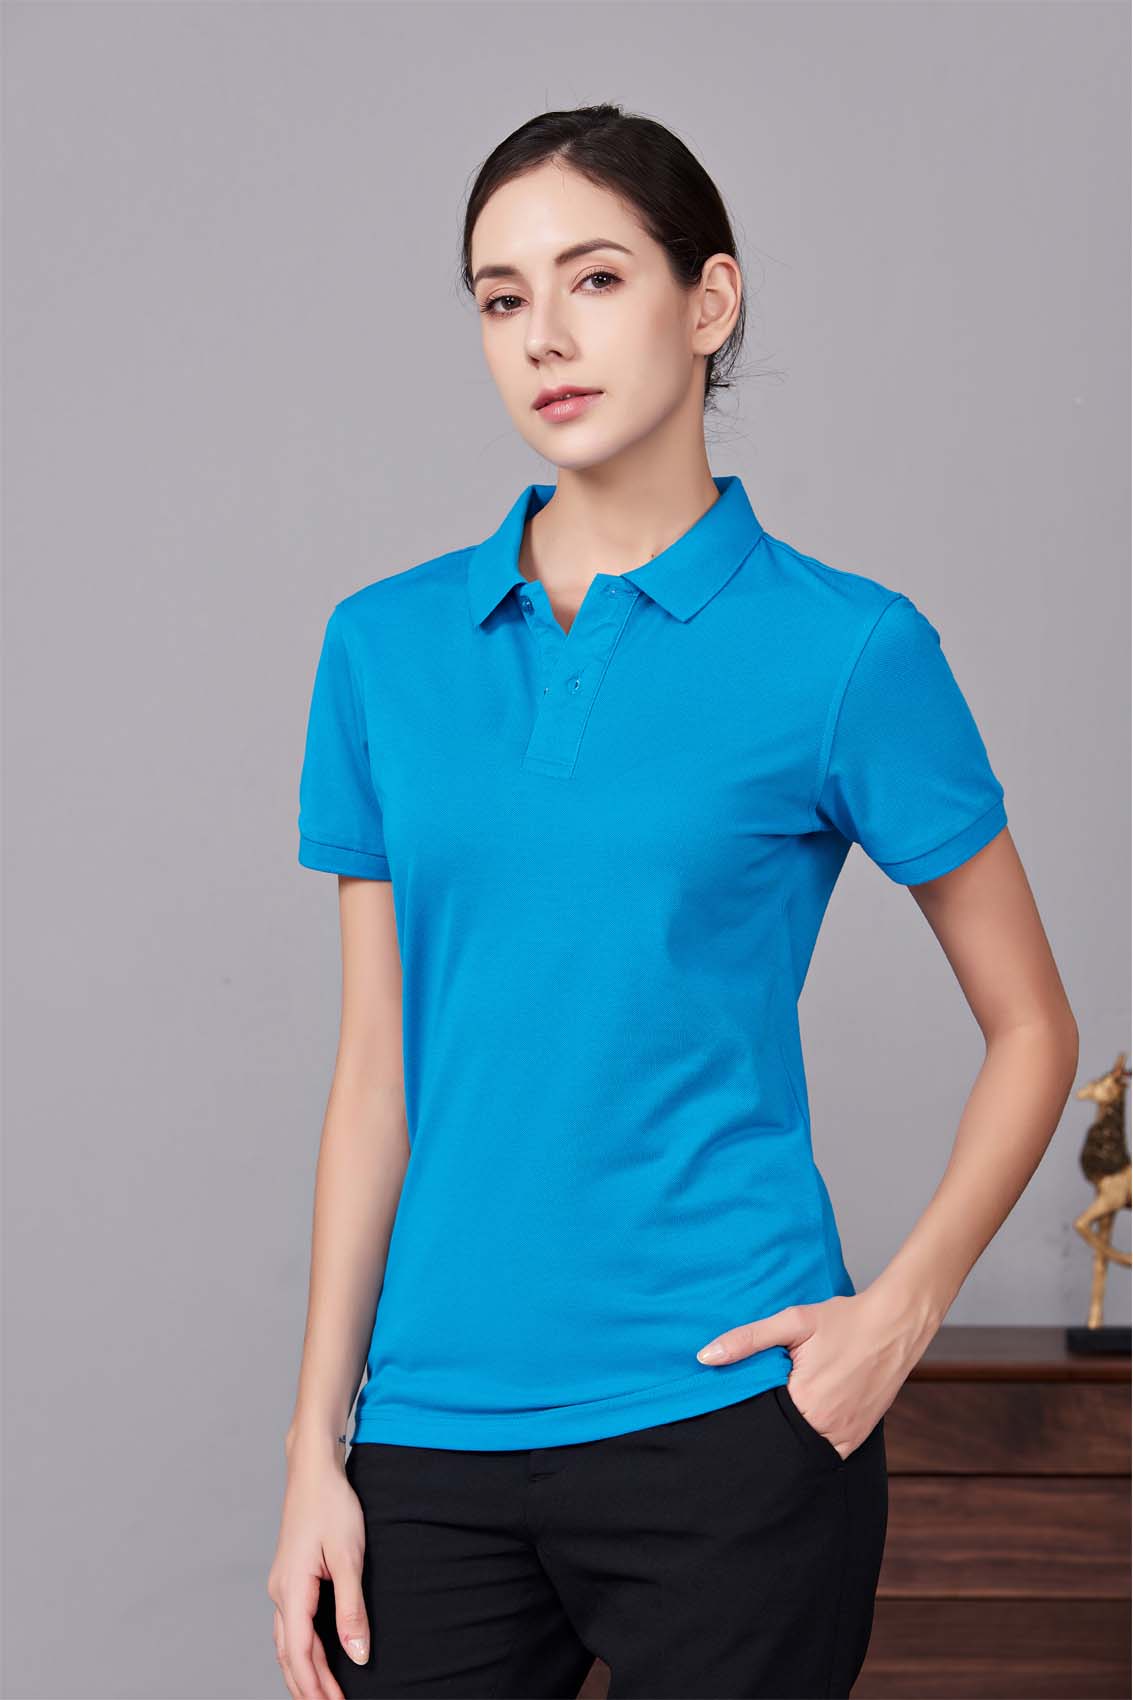 夏季男女通款湖蓝色短袖休闲T恤衫-MAD205hl